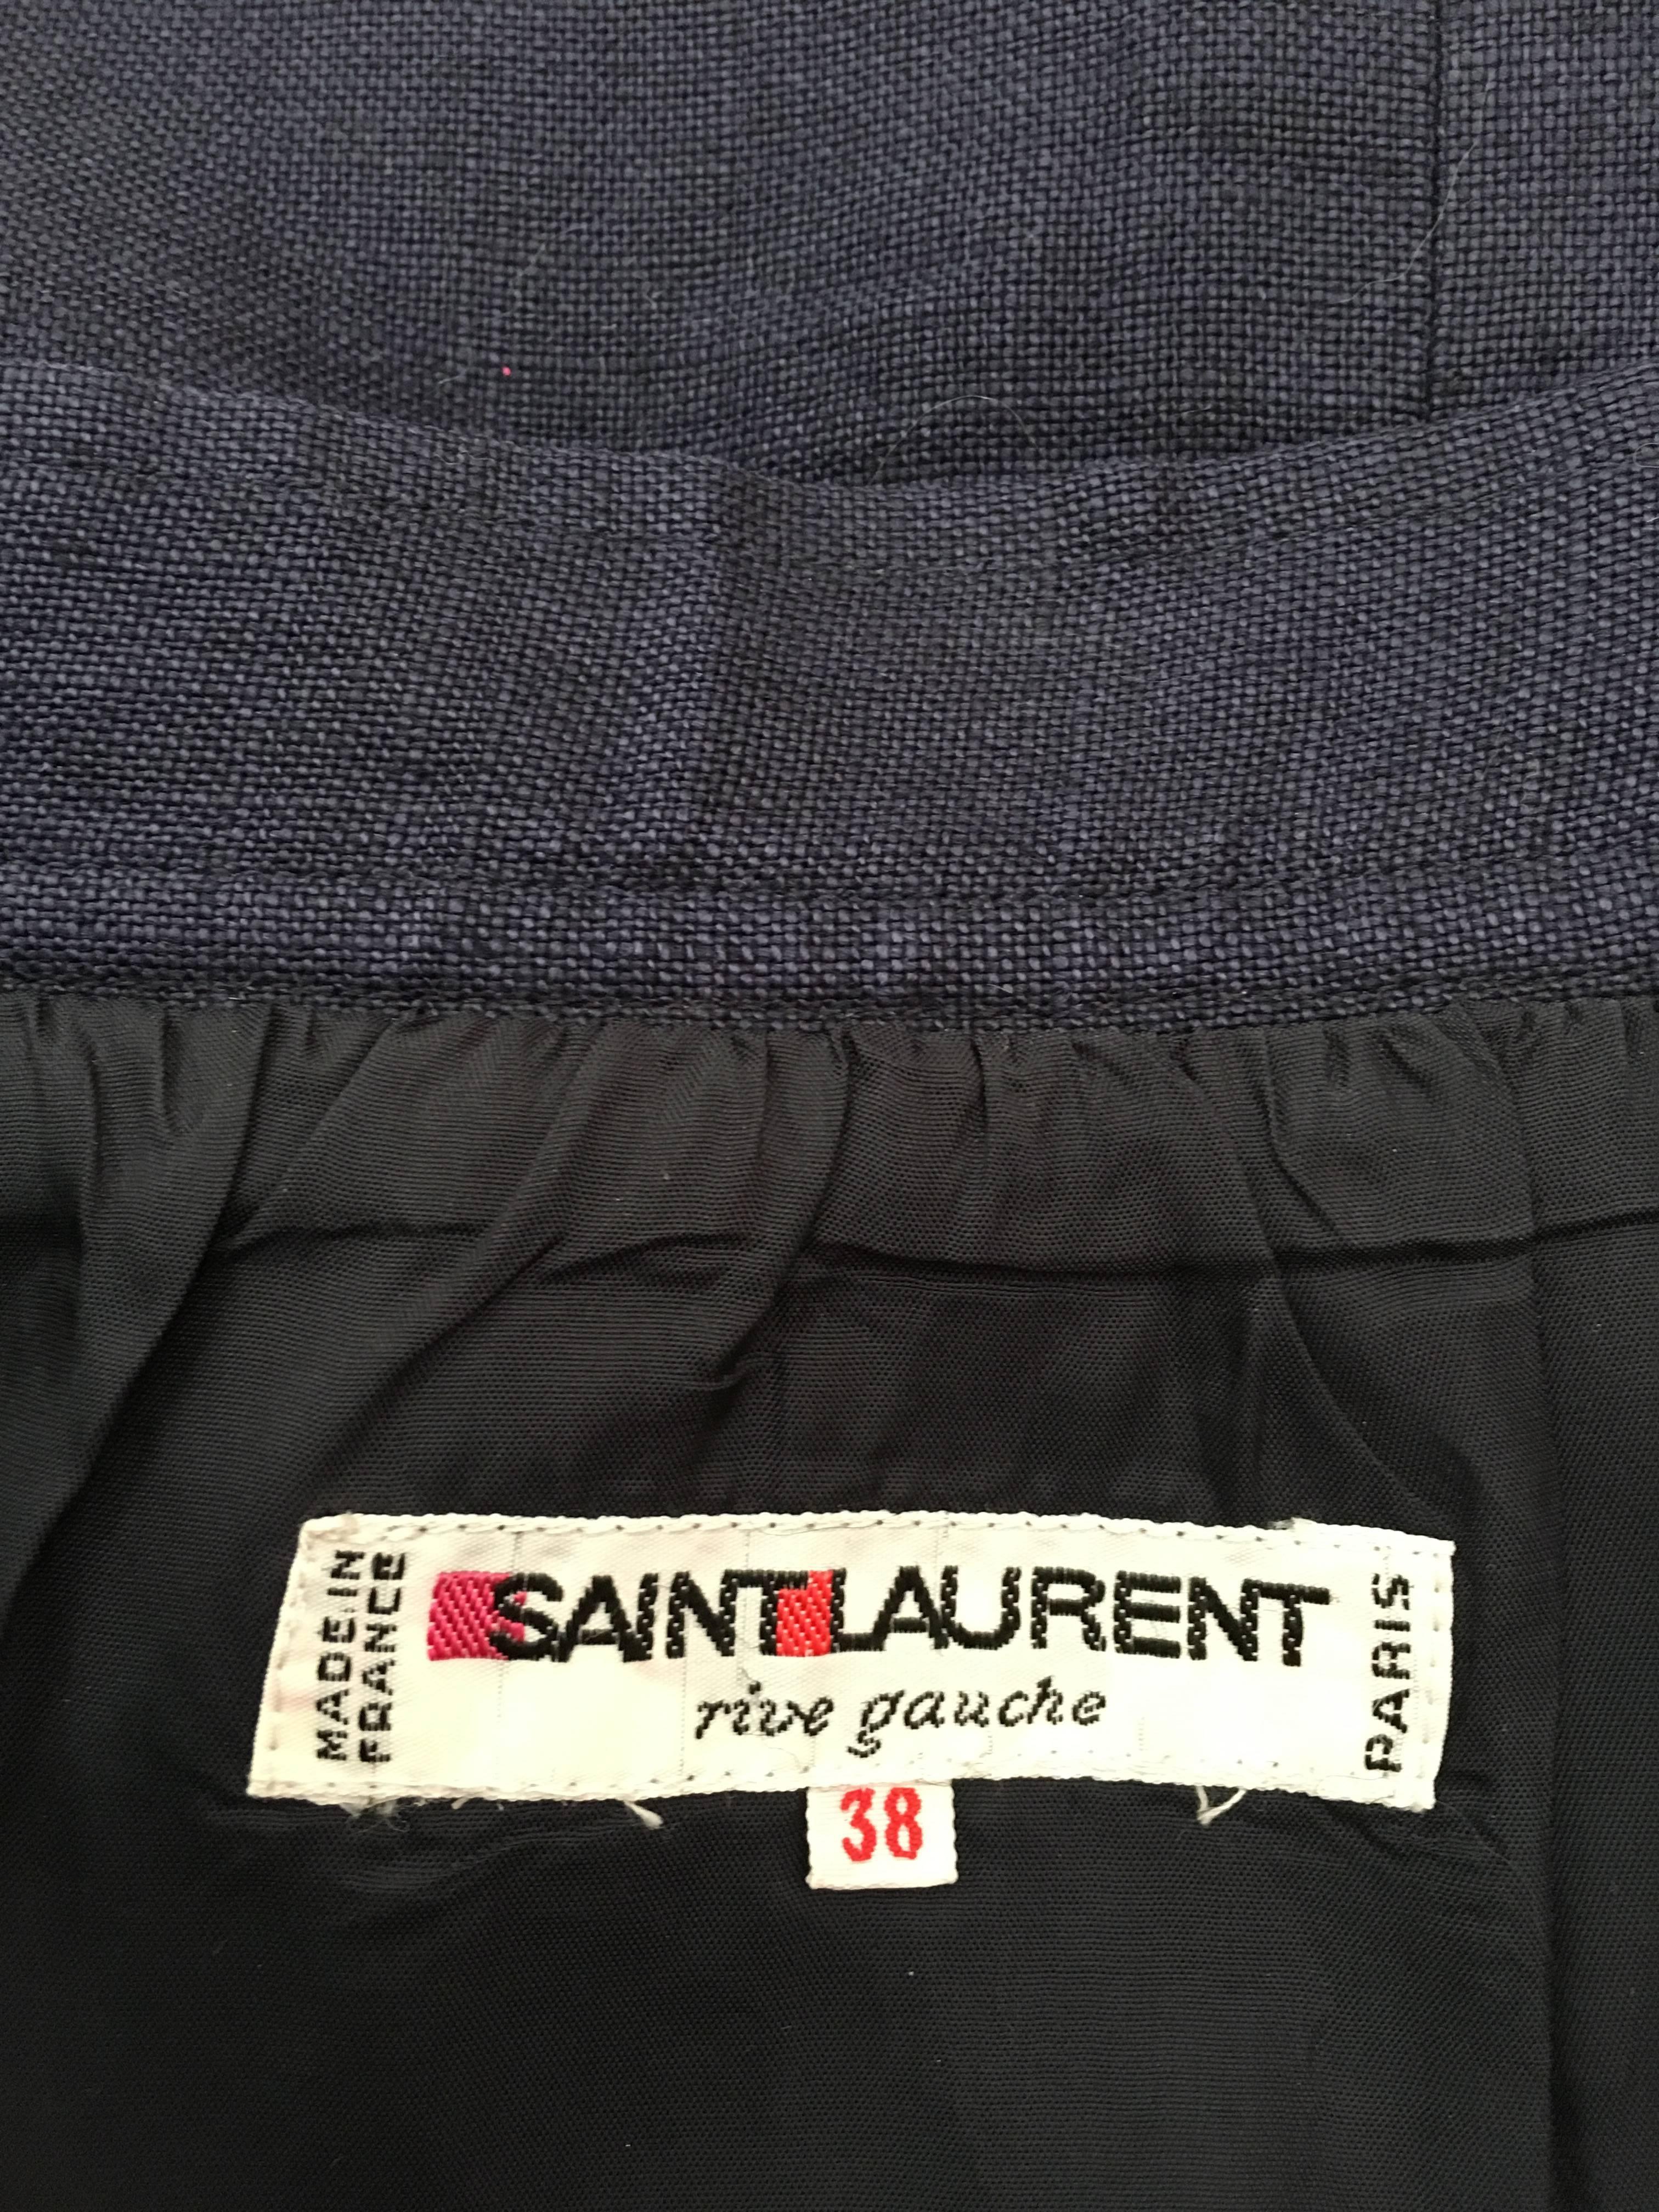 Saint Laurent Rive Gauche 1980s Navy Linen Pencil Skirt with Pockets Size 4. For Sale 5